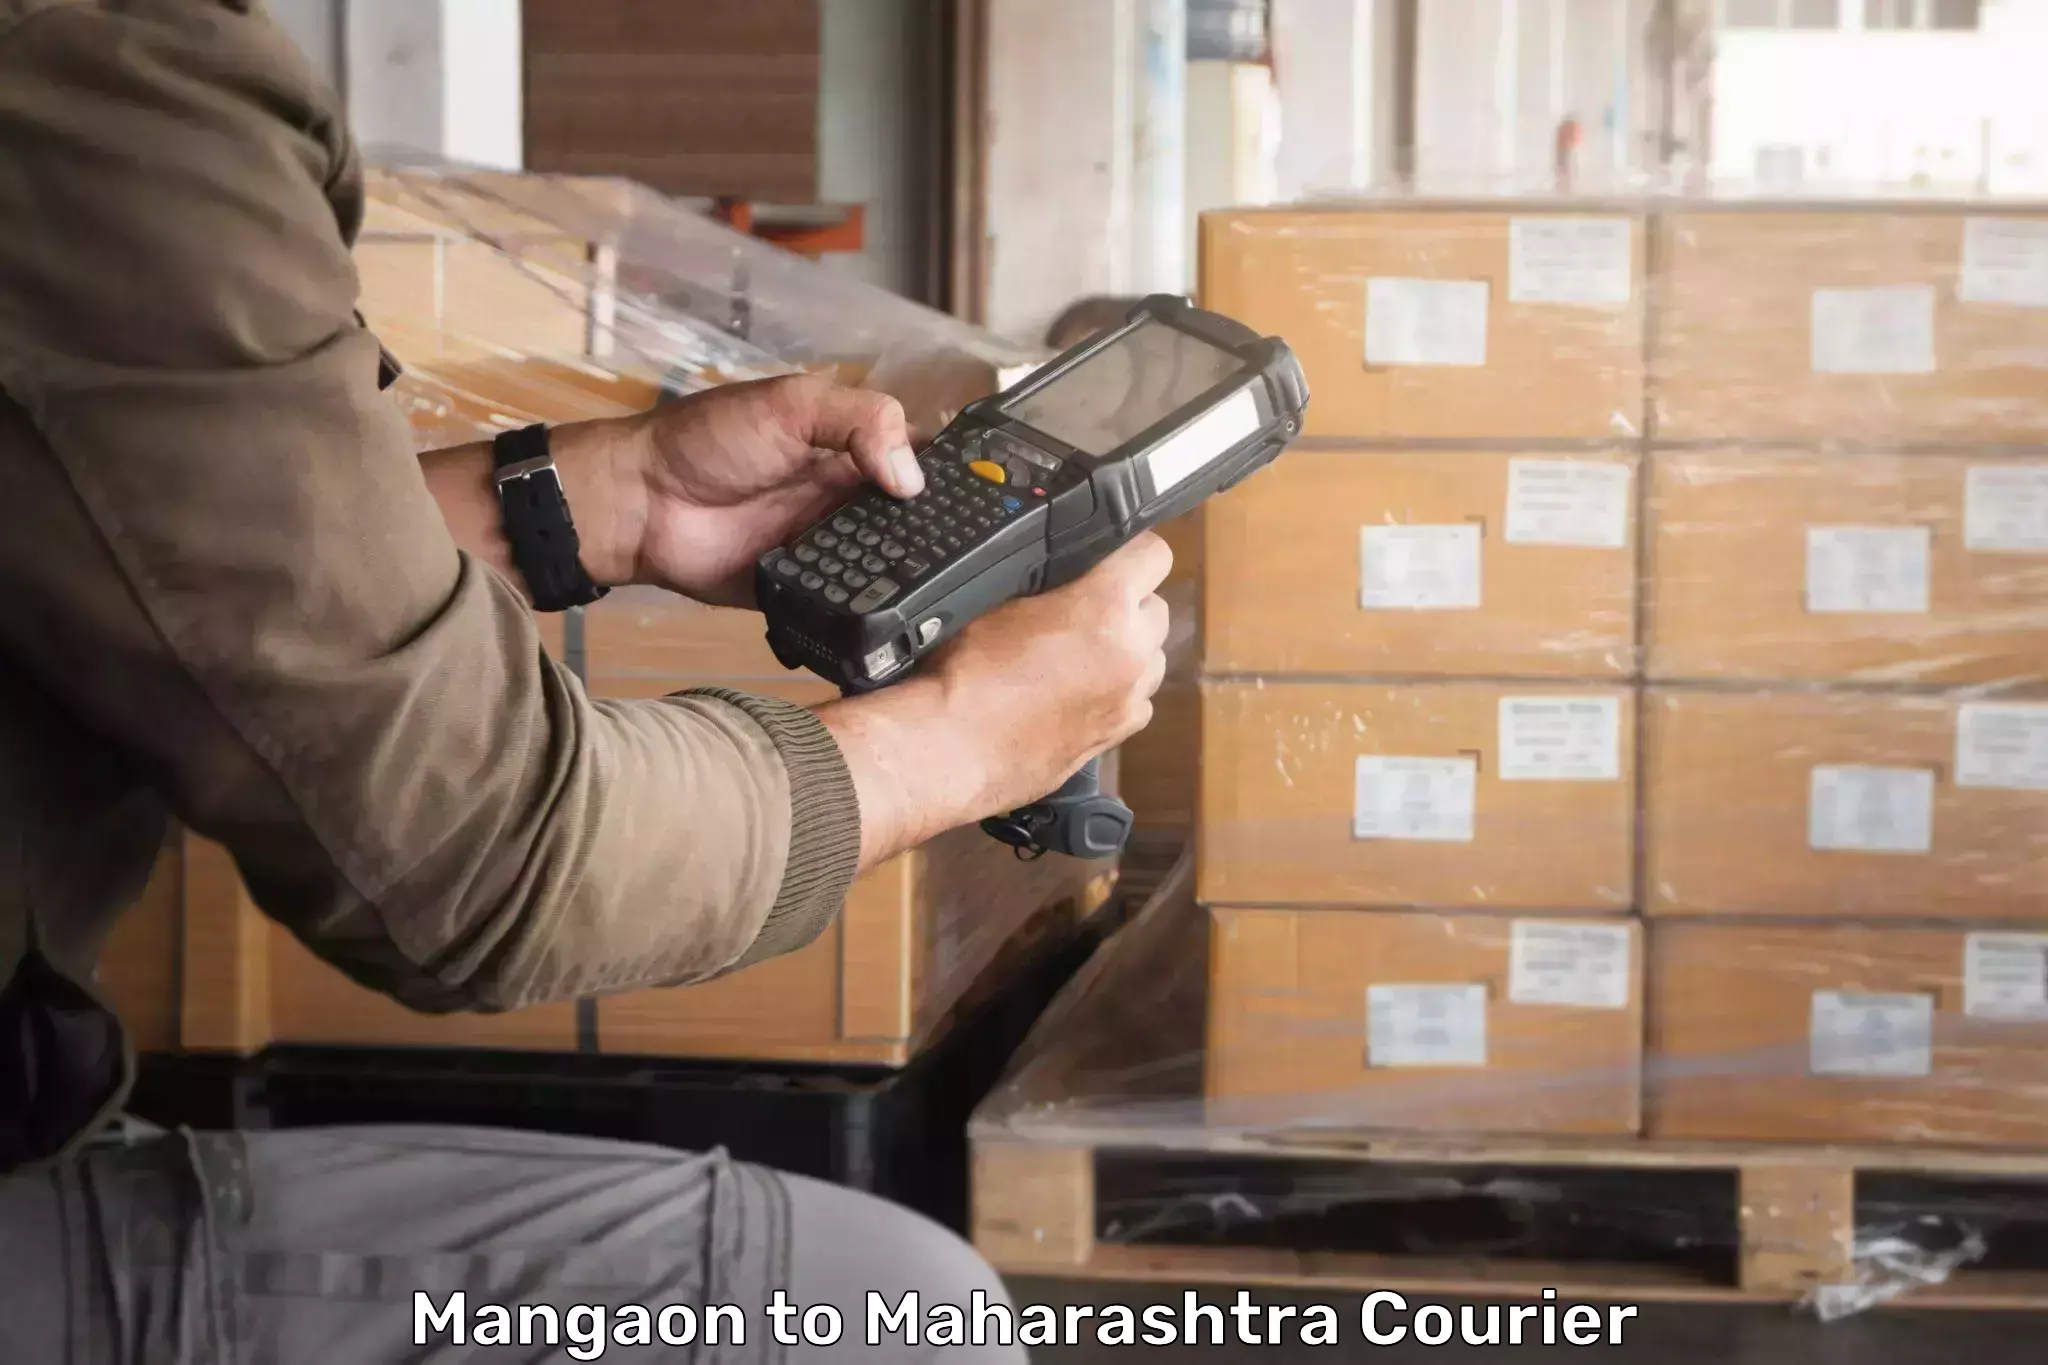 Express logistics service Mangaon to Shirpur